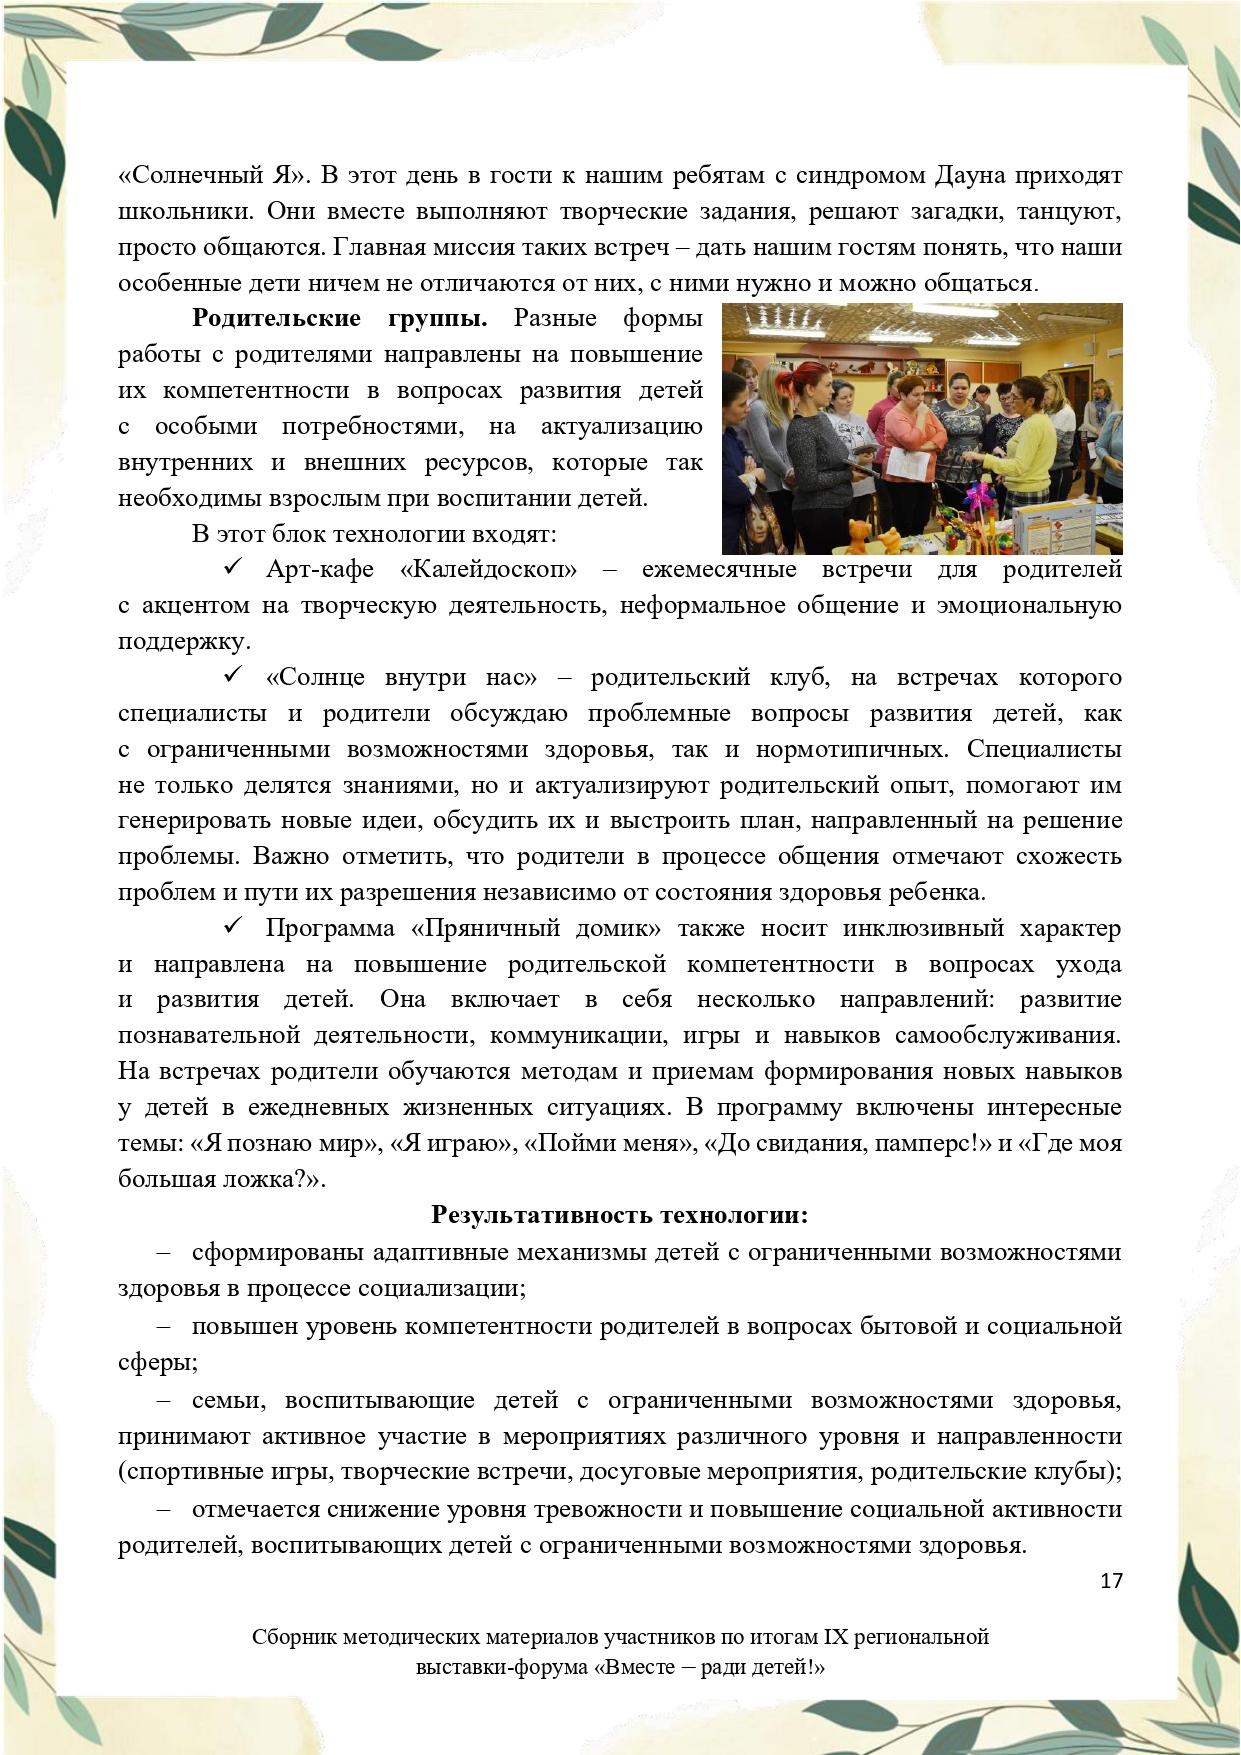 Sbornik_metodicheskikh_materialov_uchastnikov_IX_regionalnoy_vystavki-foruma_Vmeste__radi_detey_33__2023_page-0017